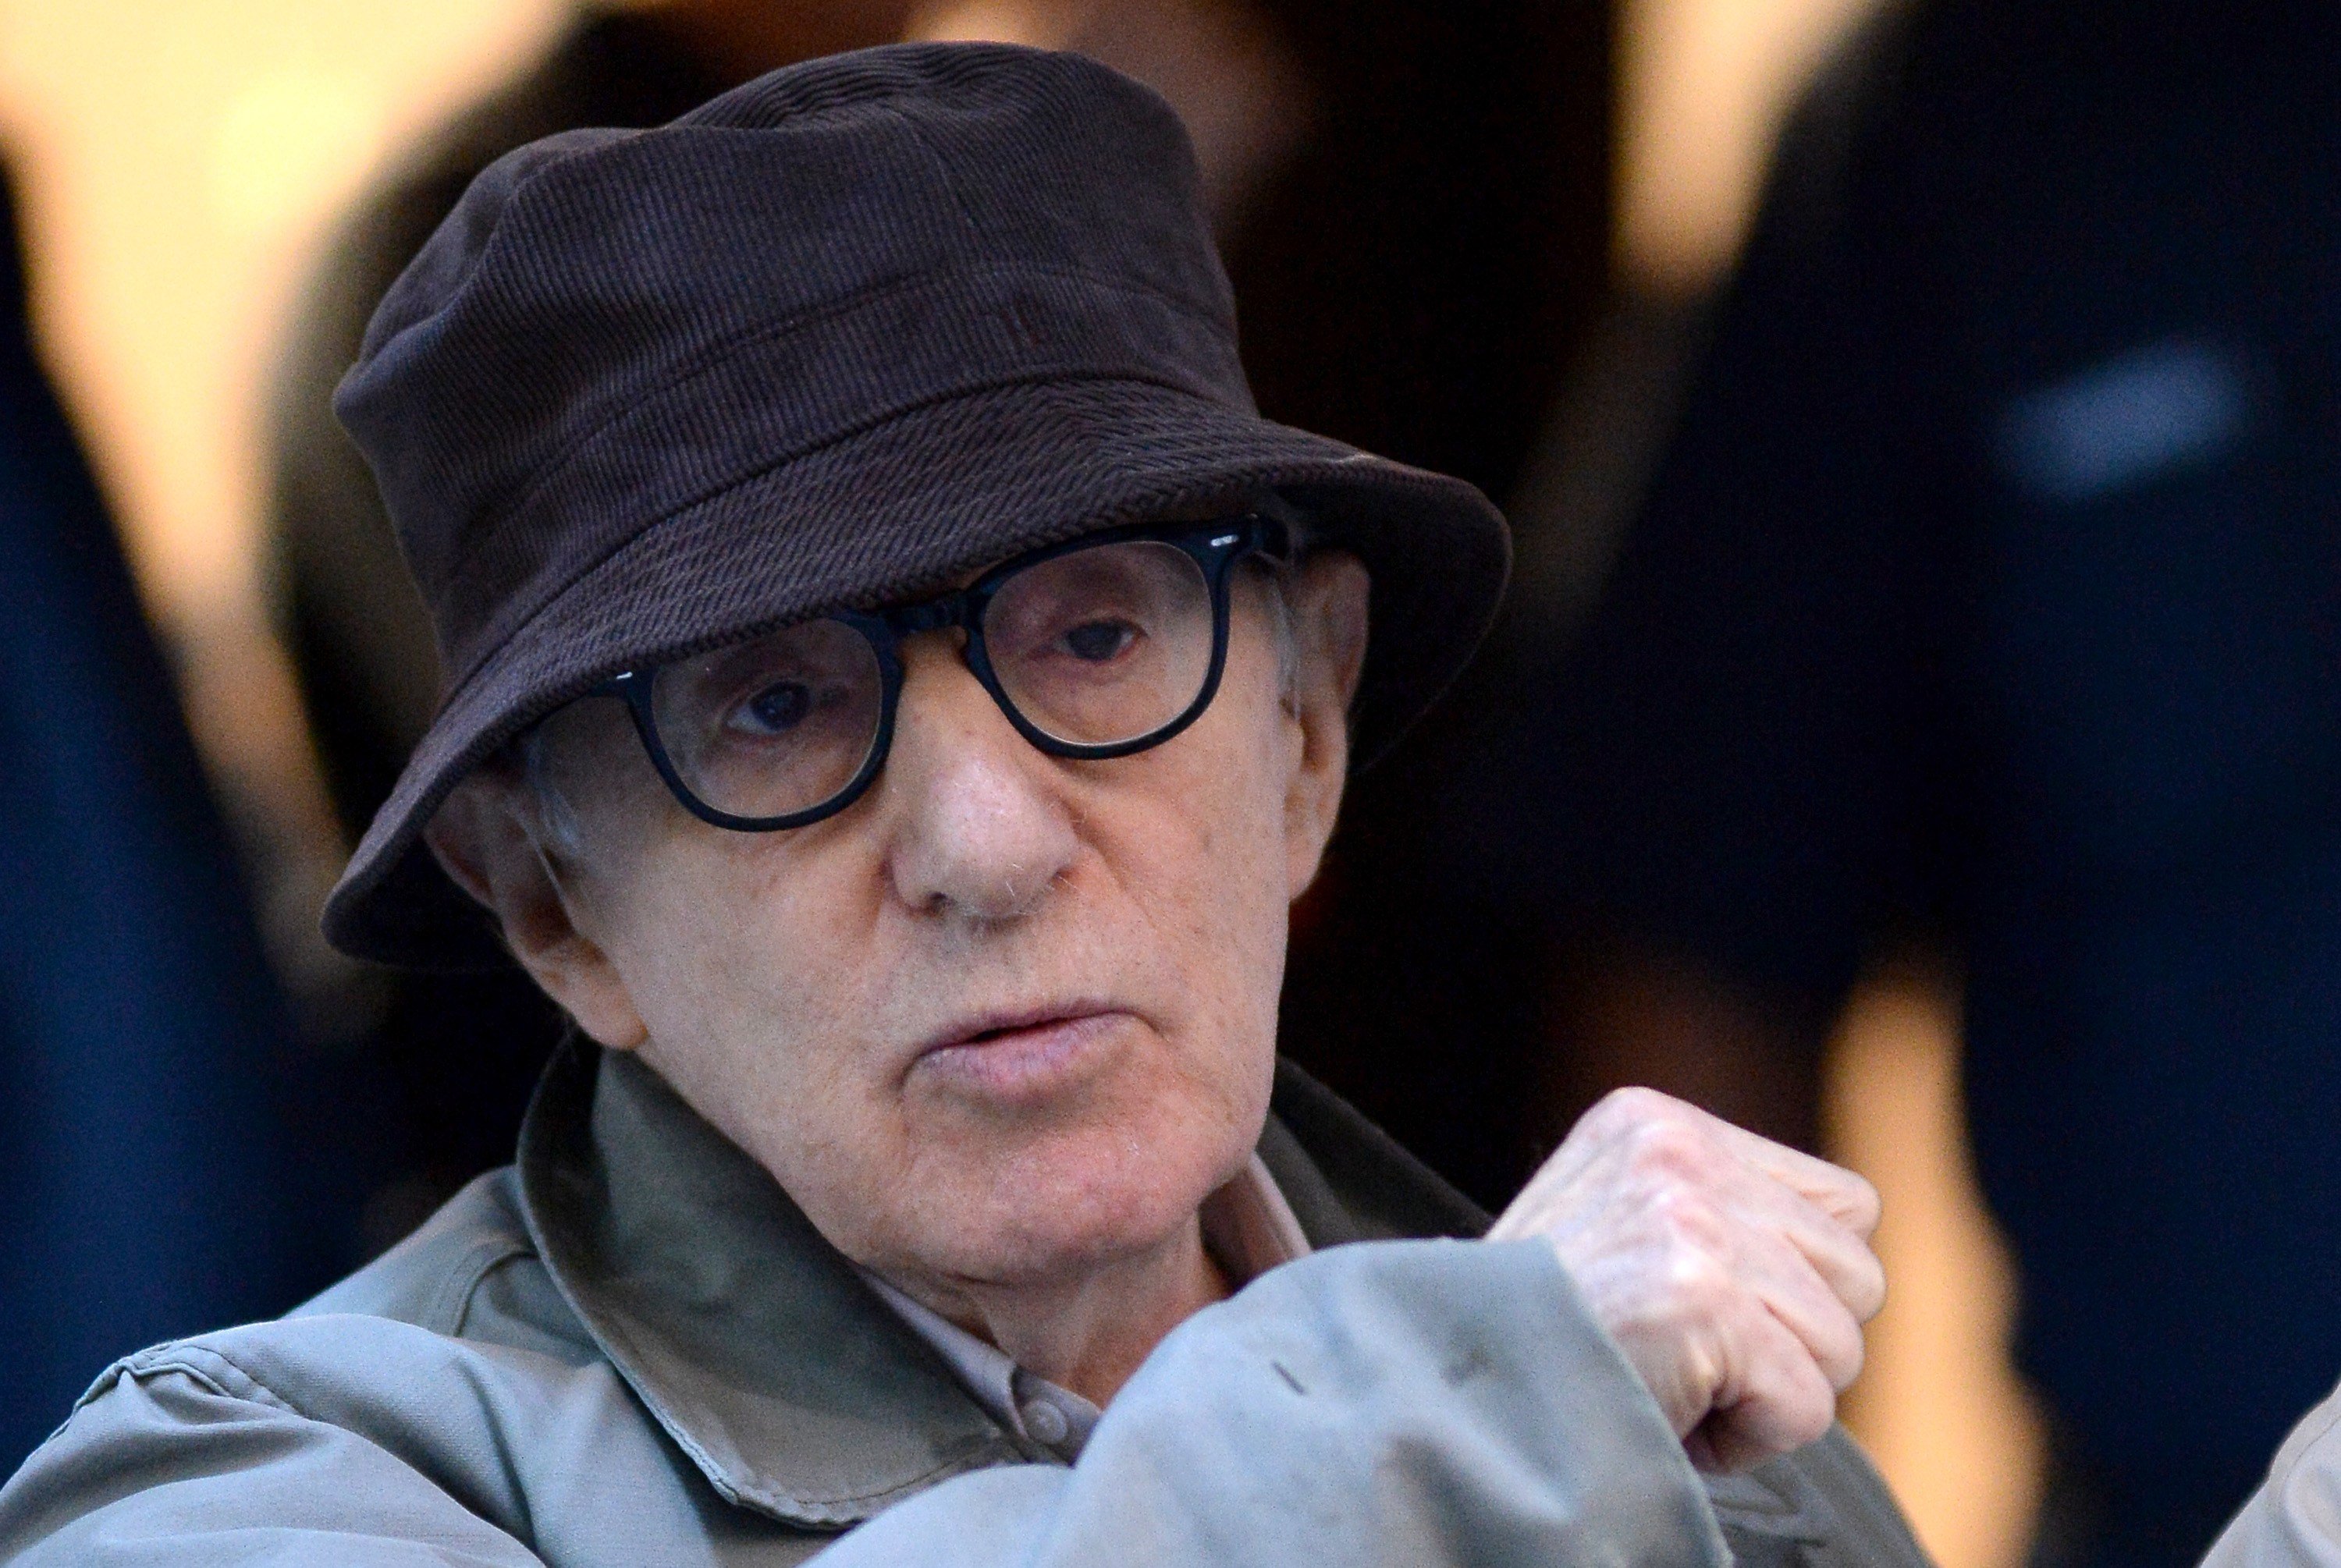 Cancel·len la biografia de Woody Allen per les acusacions d'abusos sexuals